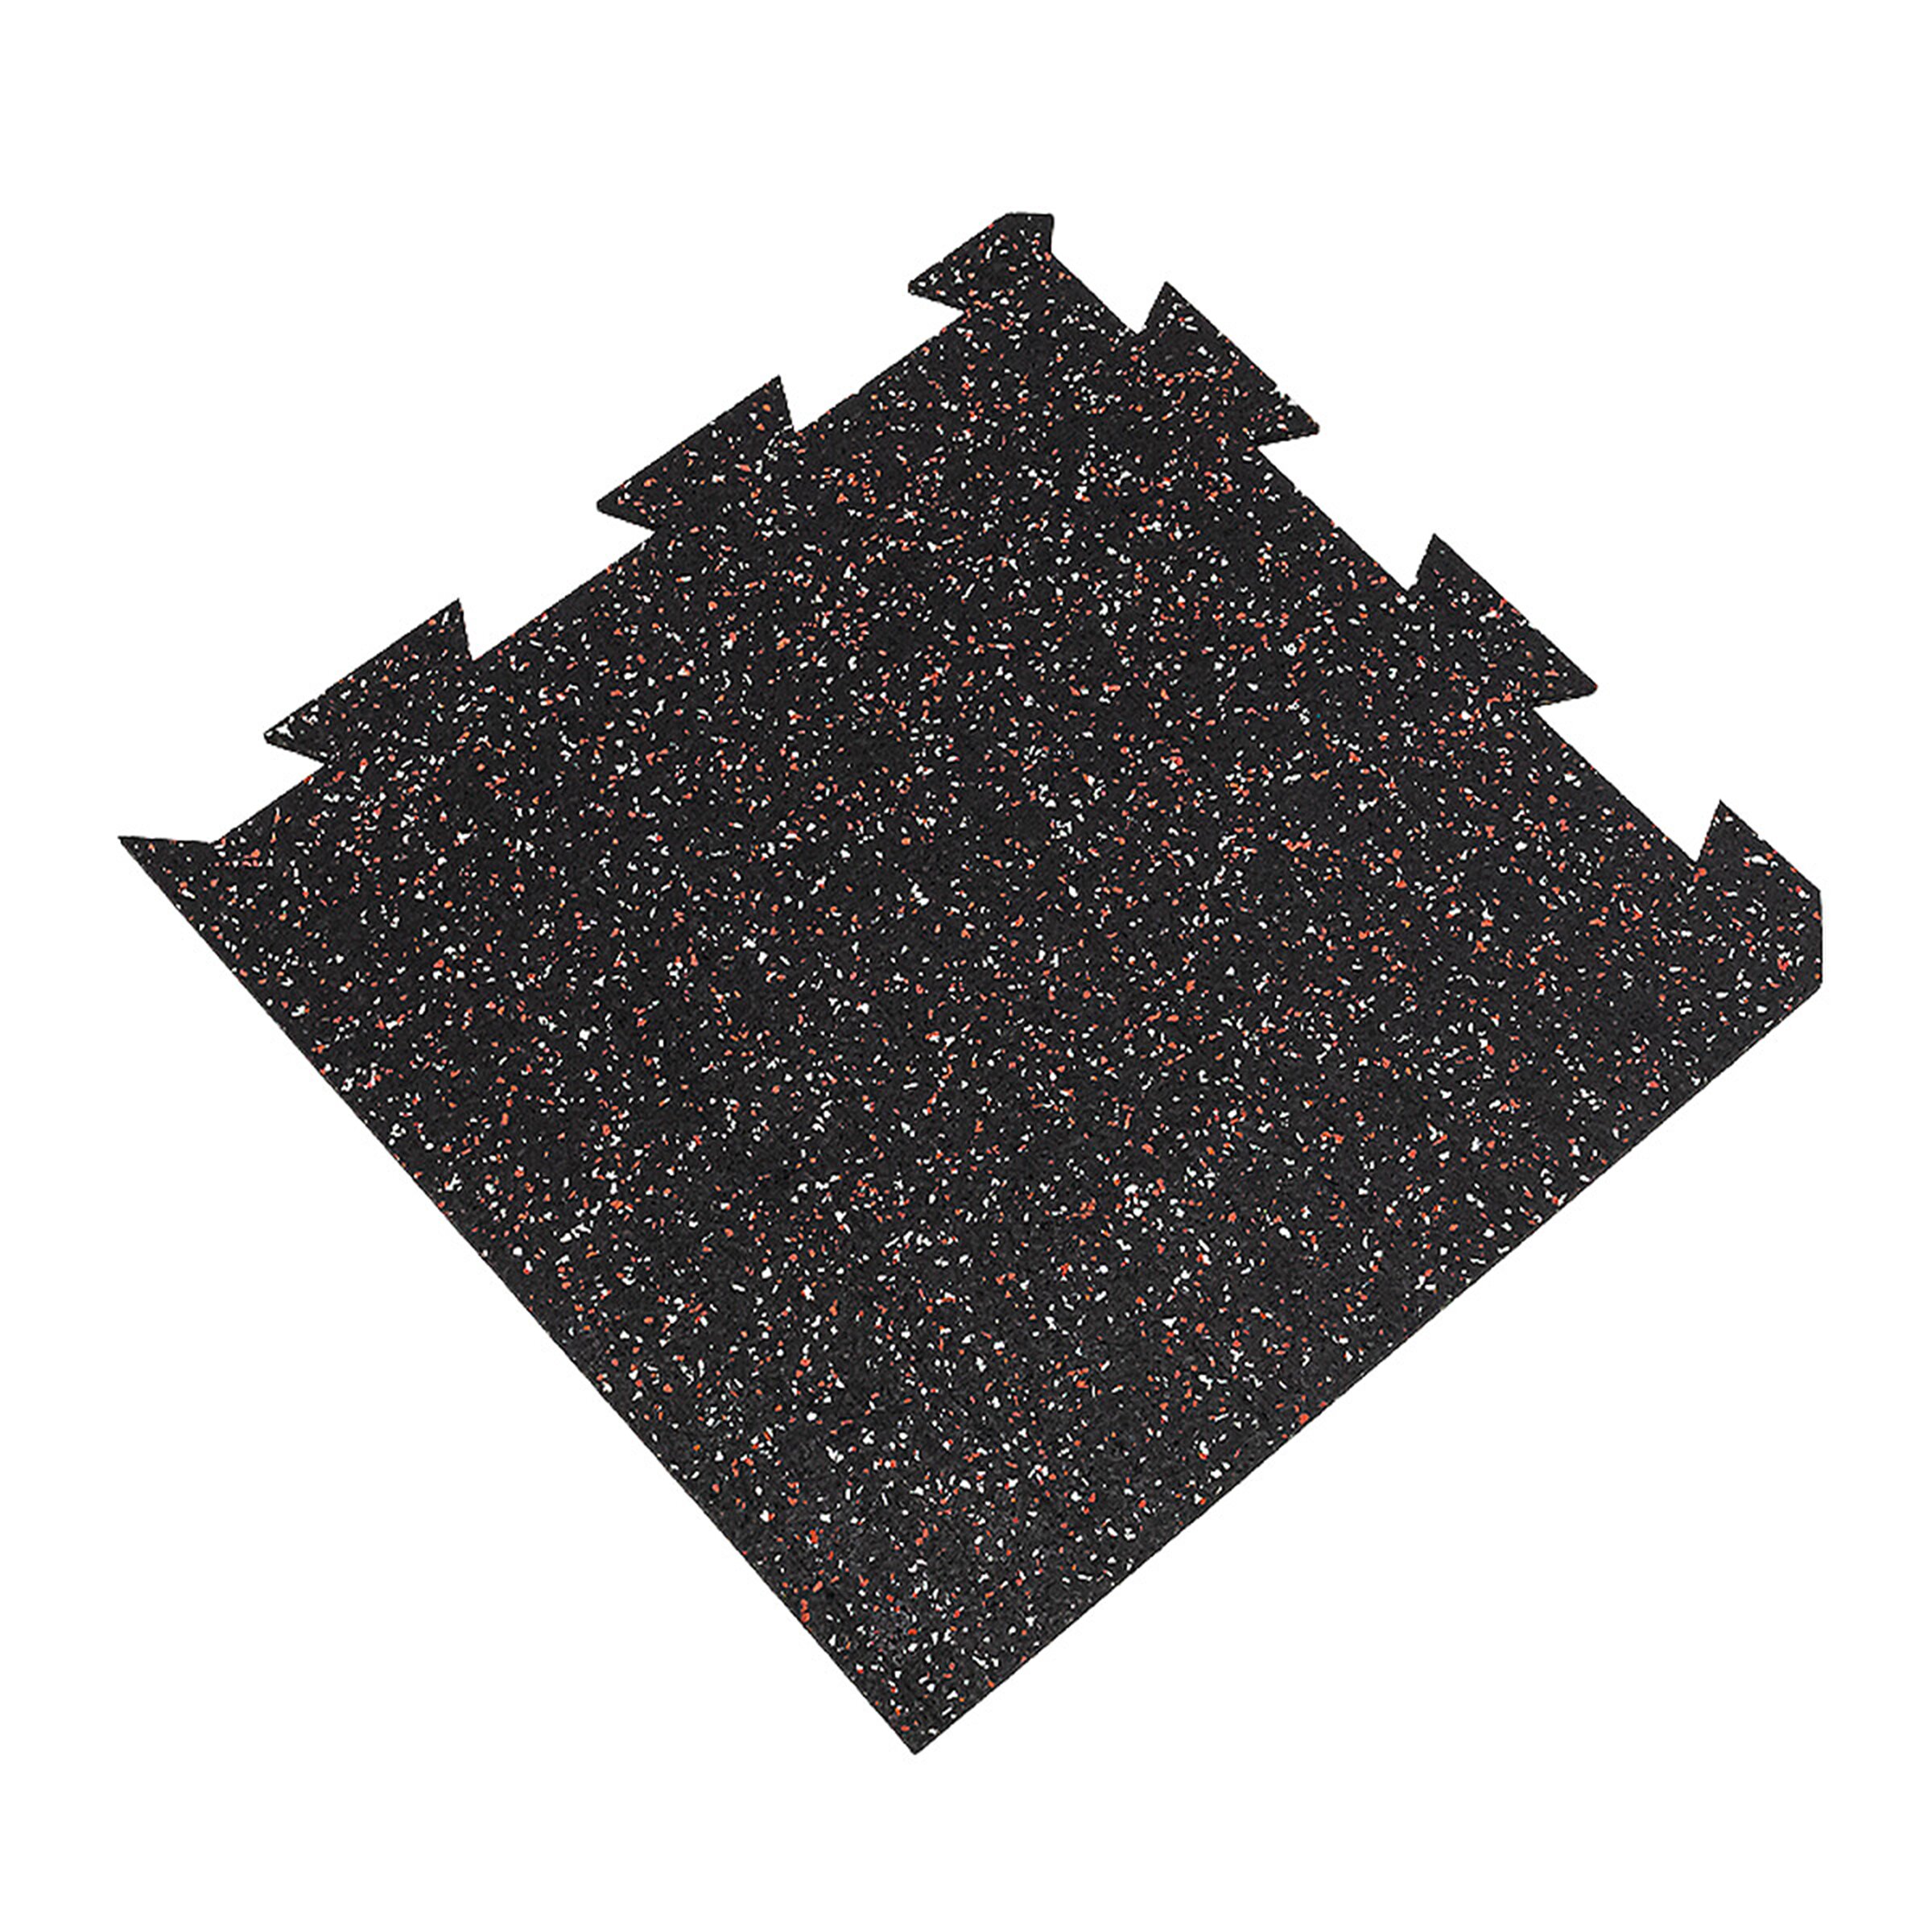 Černo-bílo-červená gumová puzzle modulová dlažba FLOMA SF1050 FitFlo - délka 50 cm, šířka 50 cm, výška 1 cm